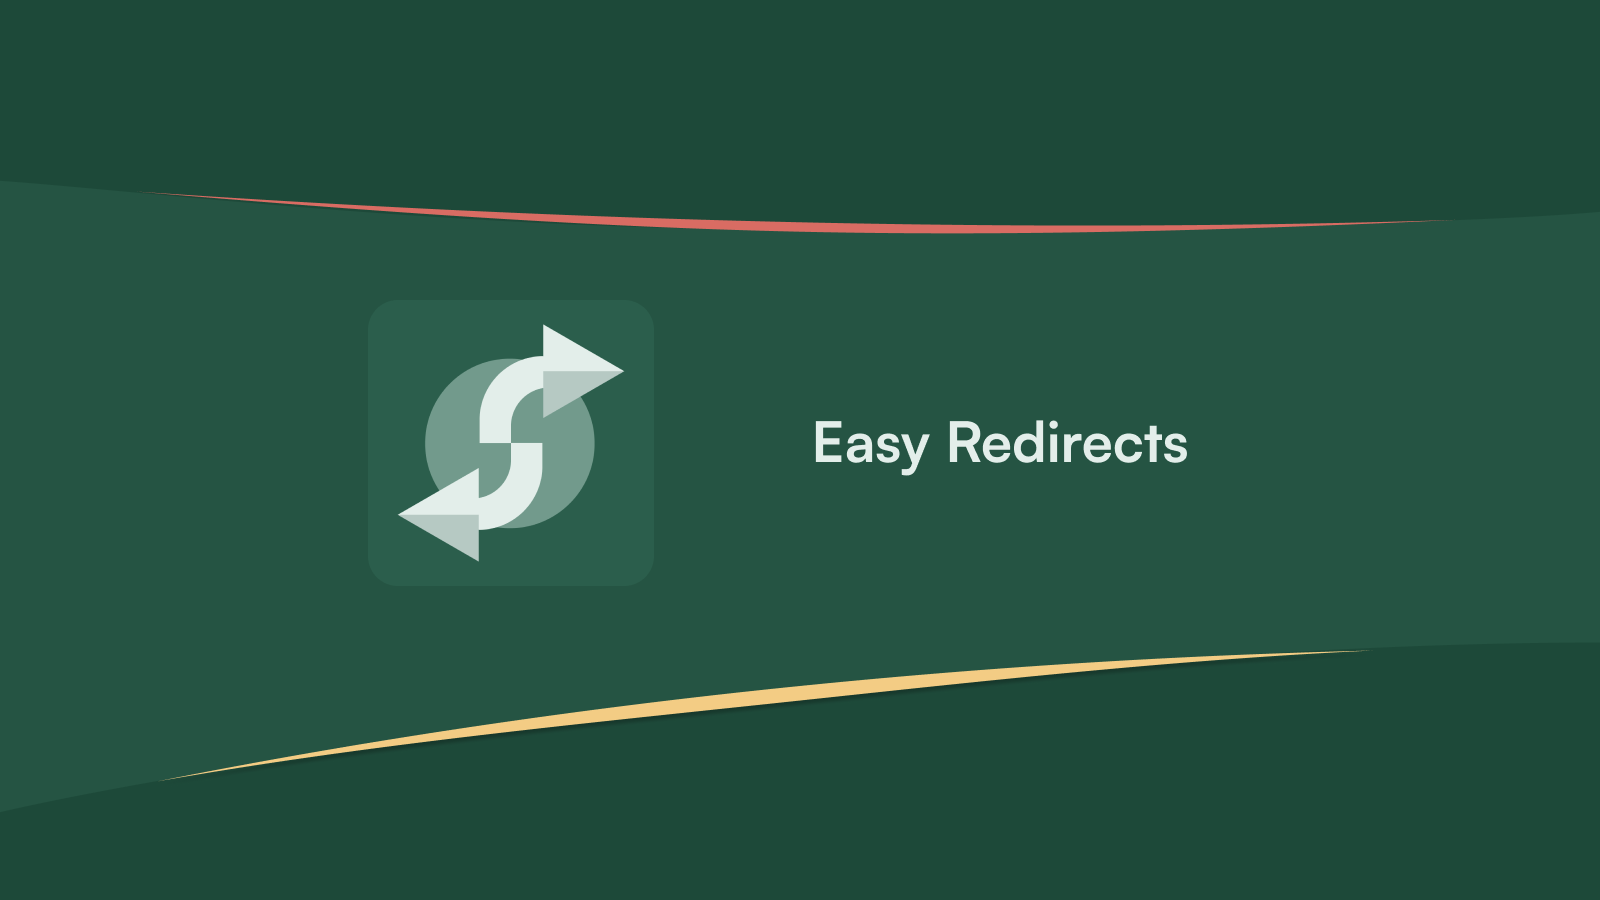 Easy Redirects App - Vereenvoudig Doorv. met Gemak